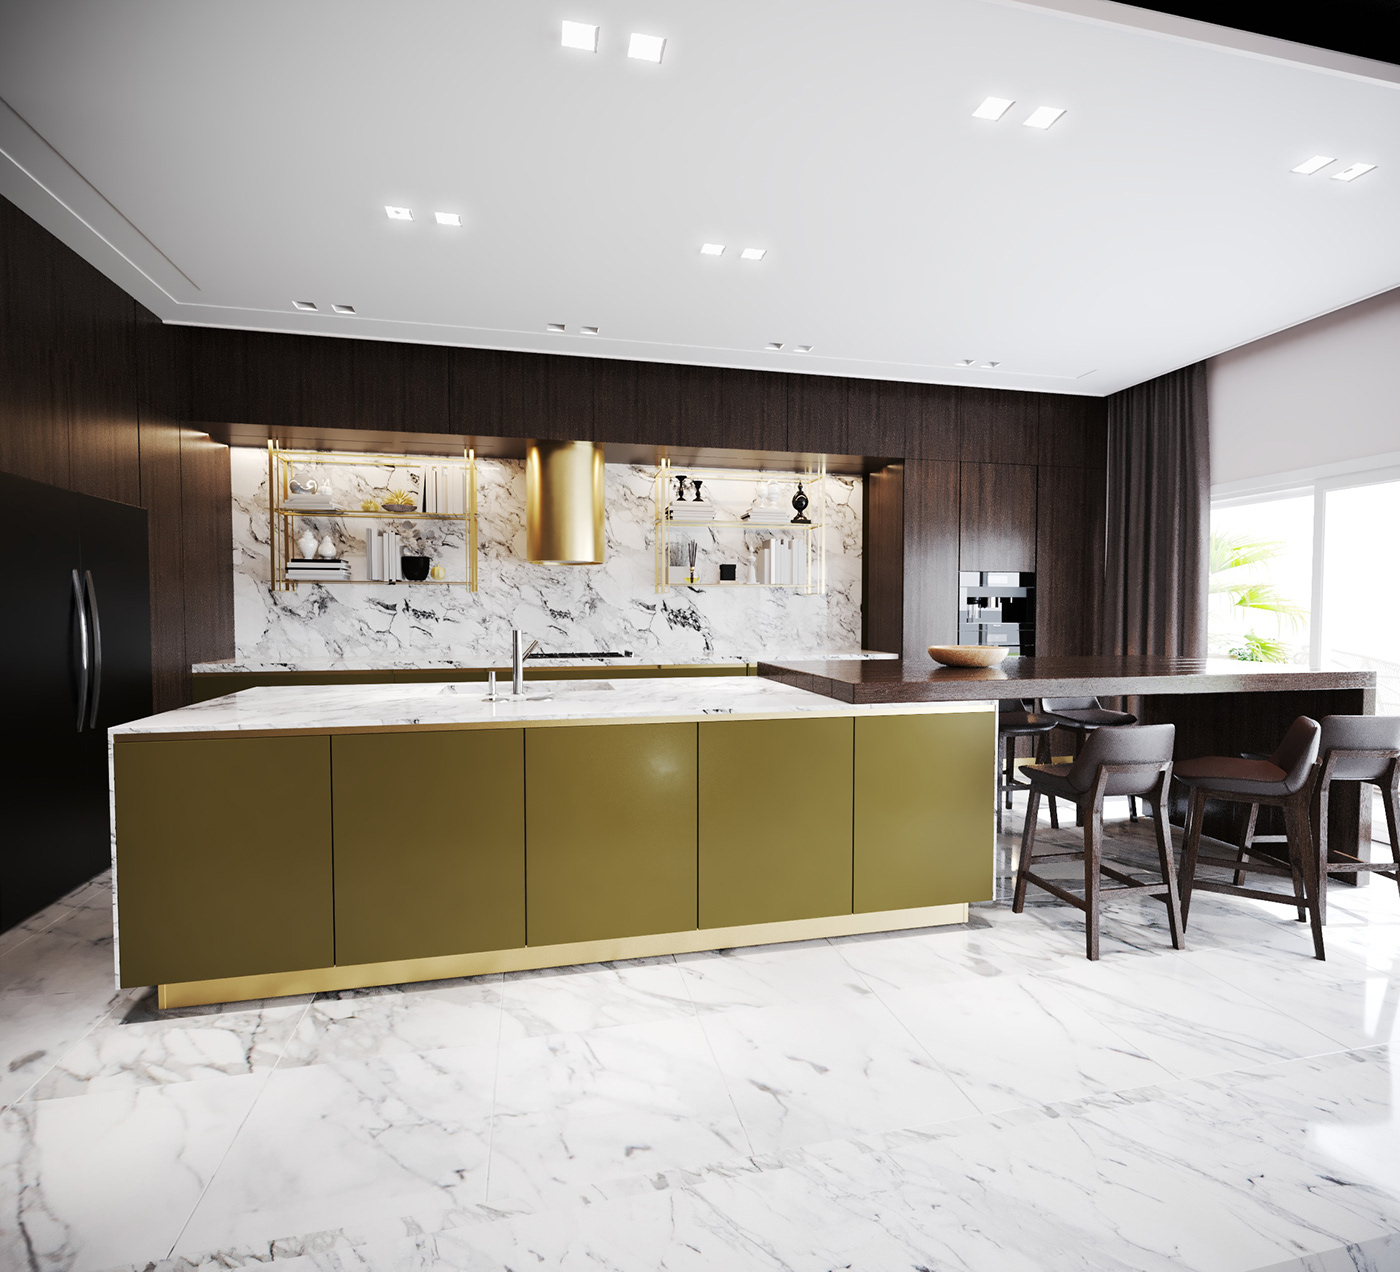 reception interior design  decor architecture kitchen Marble Open Space Interior Architecture 3dsmax